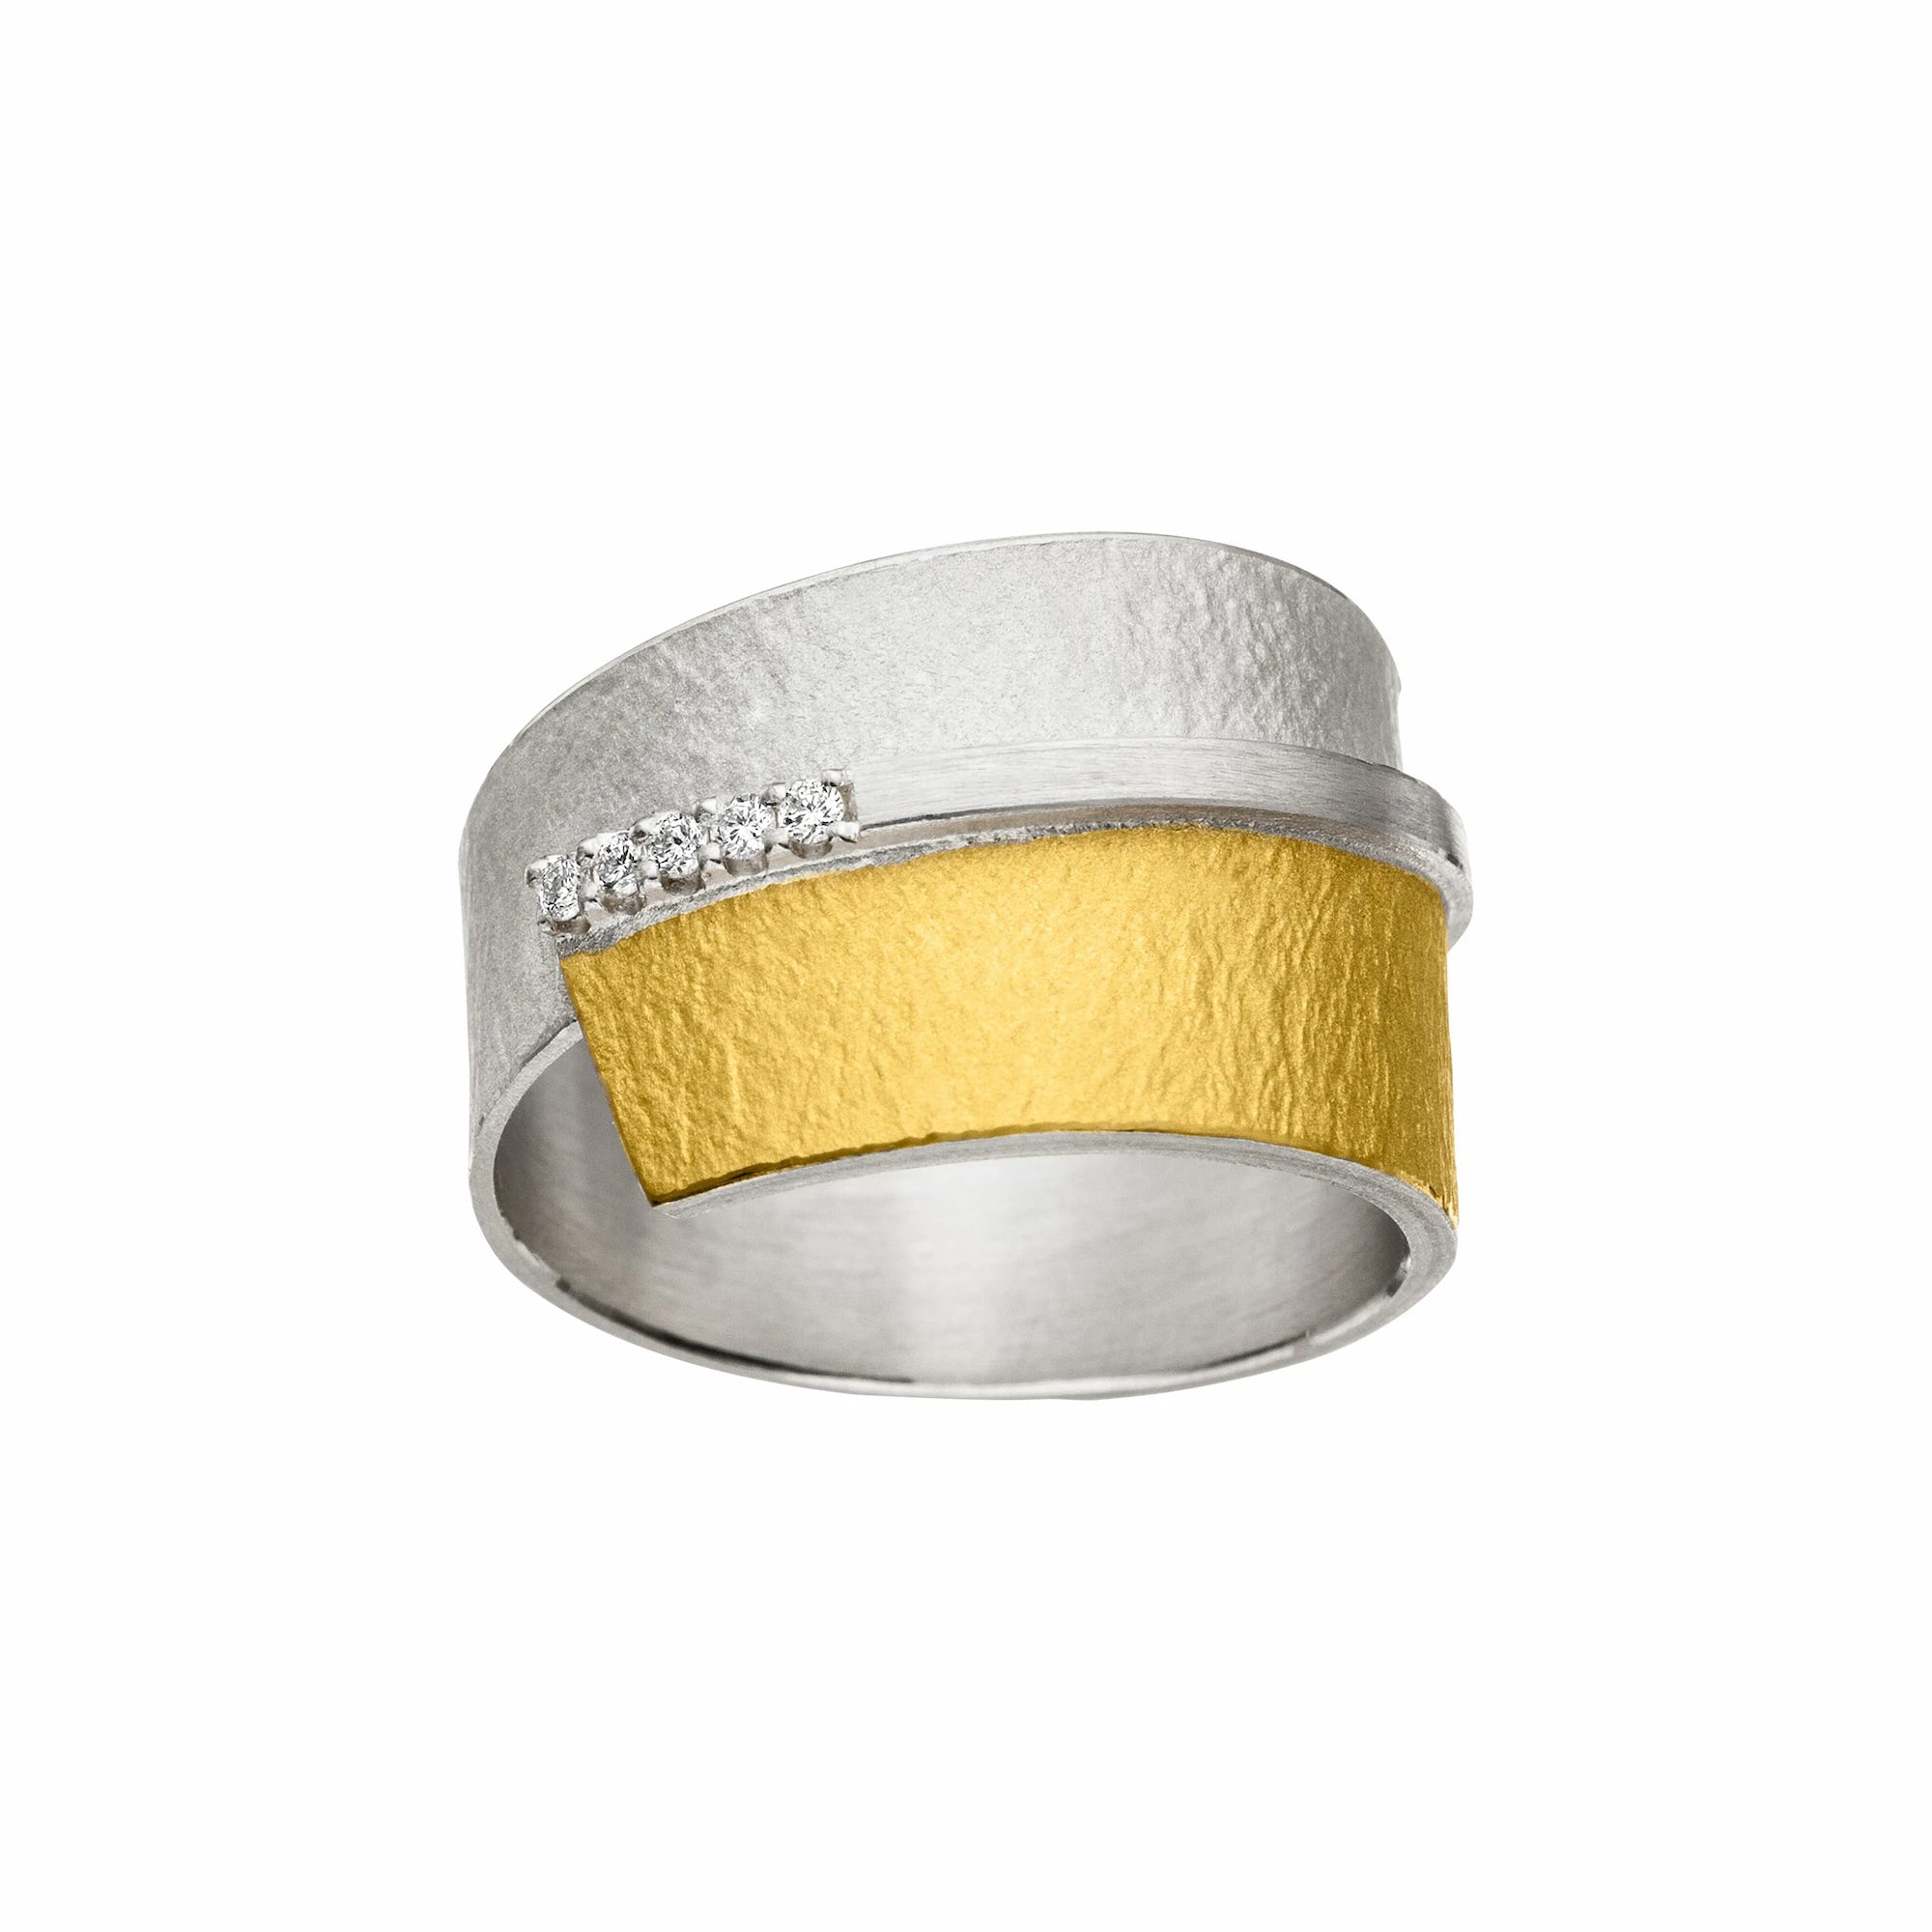 Ring aus Silber von Manu Schmuck mit Bicolor-Optik, die durch eine Goldauflage veredelt wurde